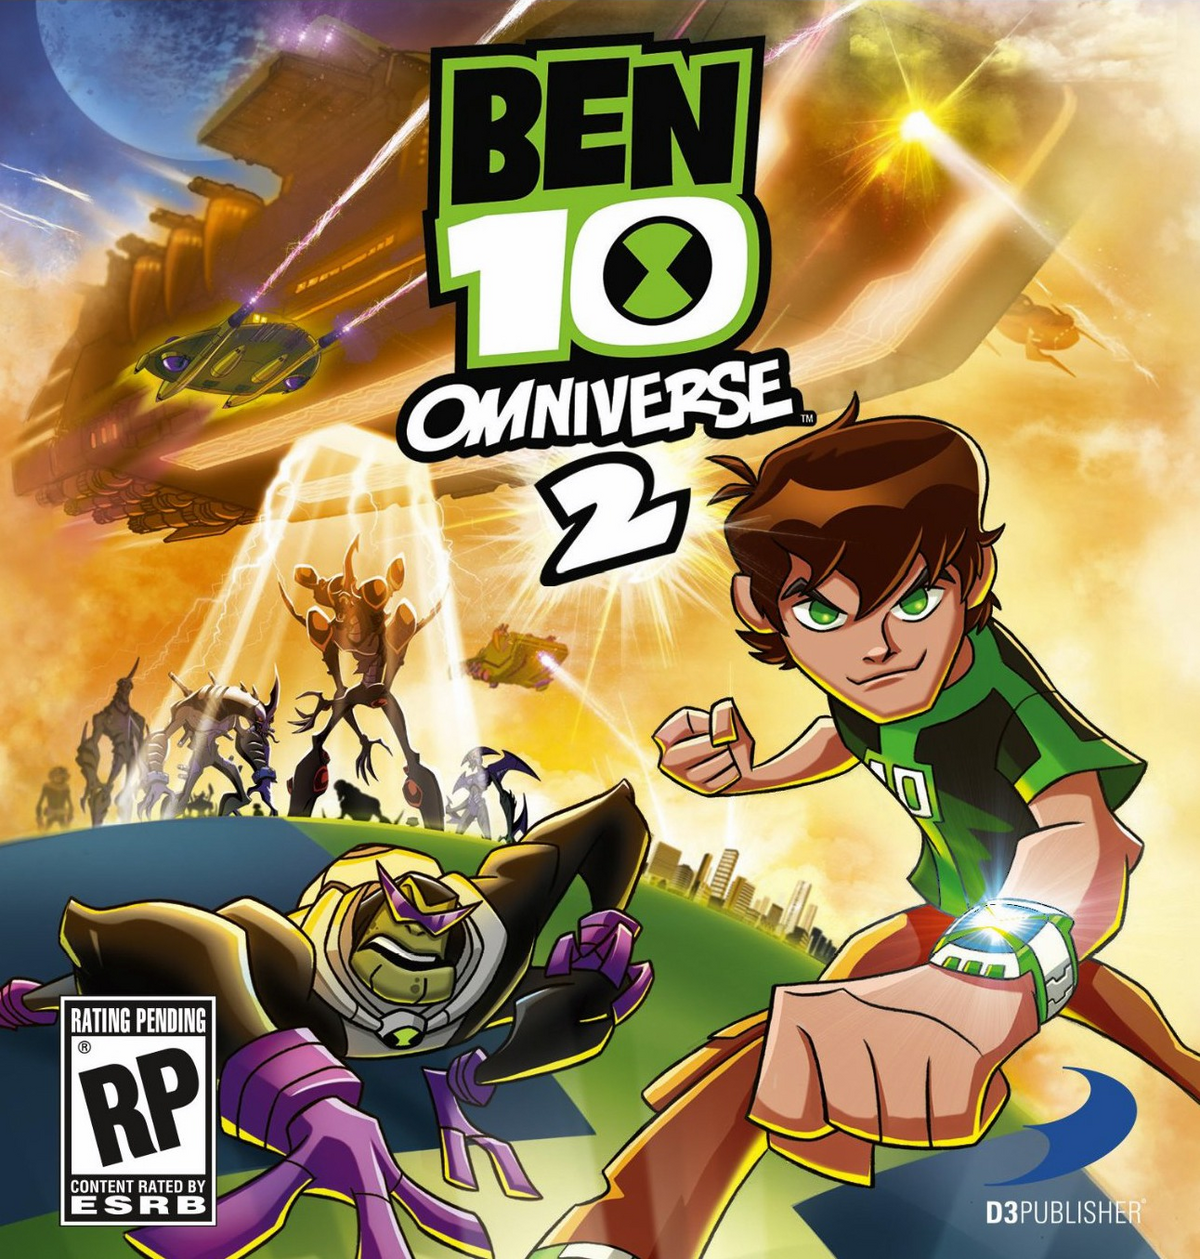 Ben 10 Ultimate Alien Games - Ben 10 The Alien Device game